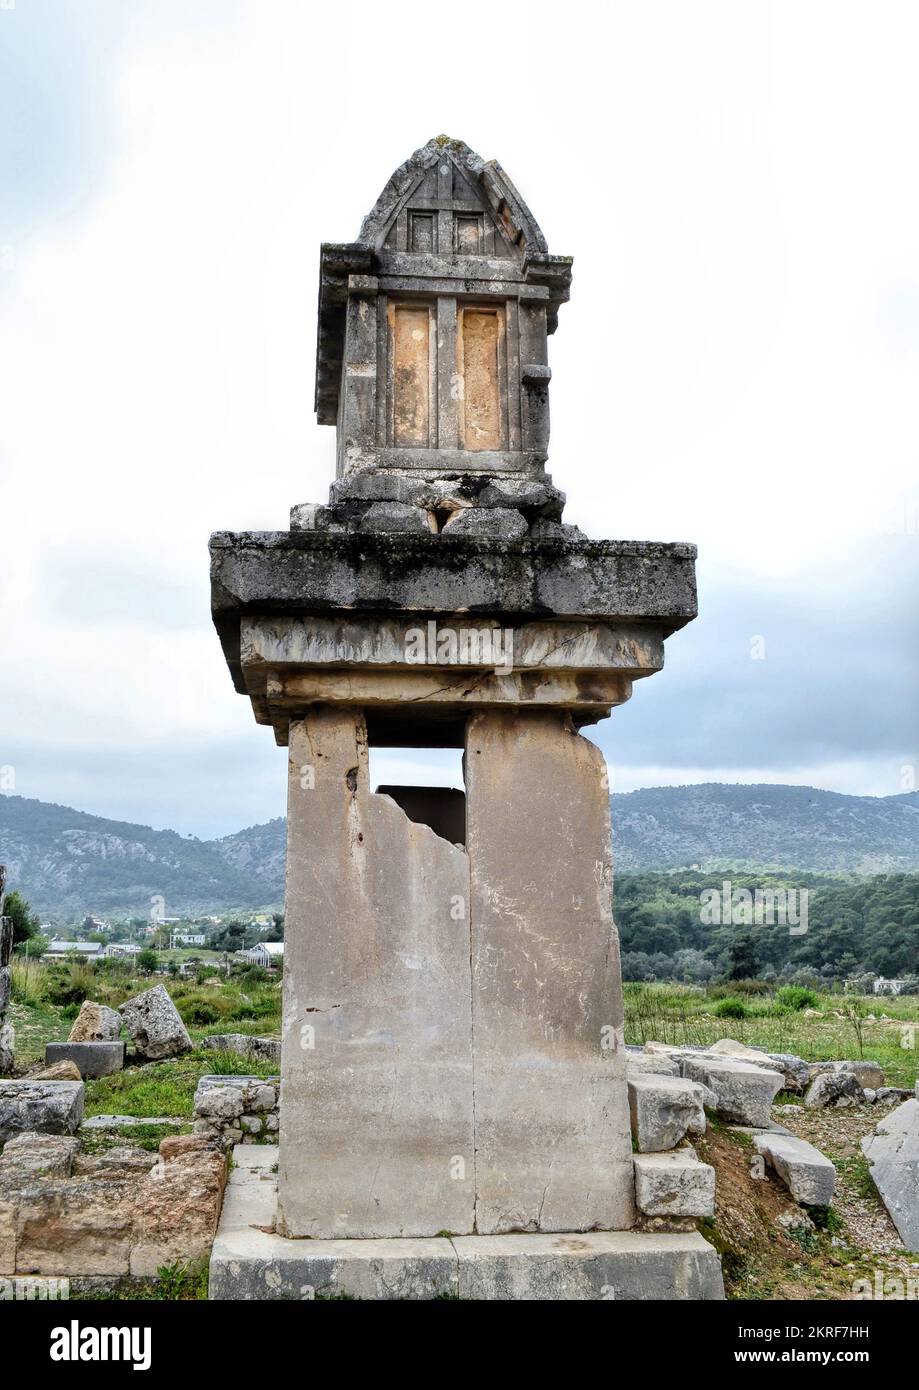 Antalya, Turquie, mai 2014 : ville ancienne de Xanthos. Sarcophage monumental et les ruines de l'ancienne ville de Xanthos - Letoon à Kas. Capitale de Lycia. Banque D'Images